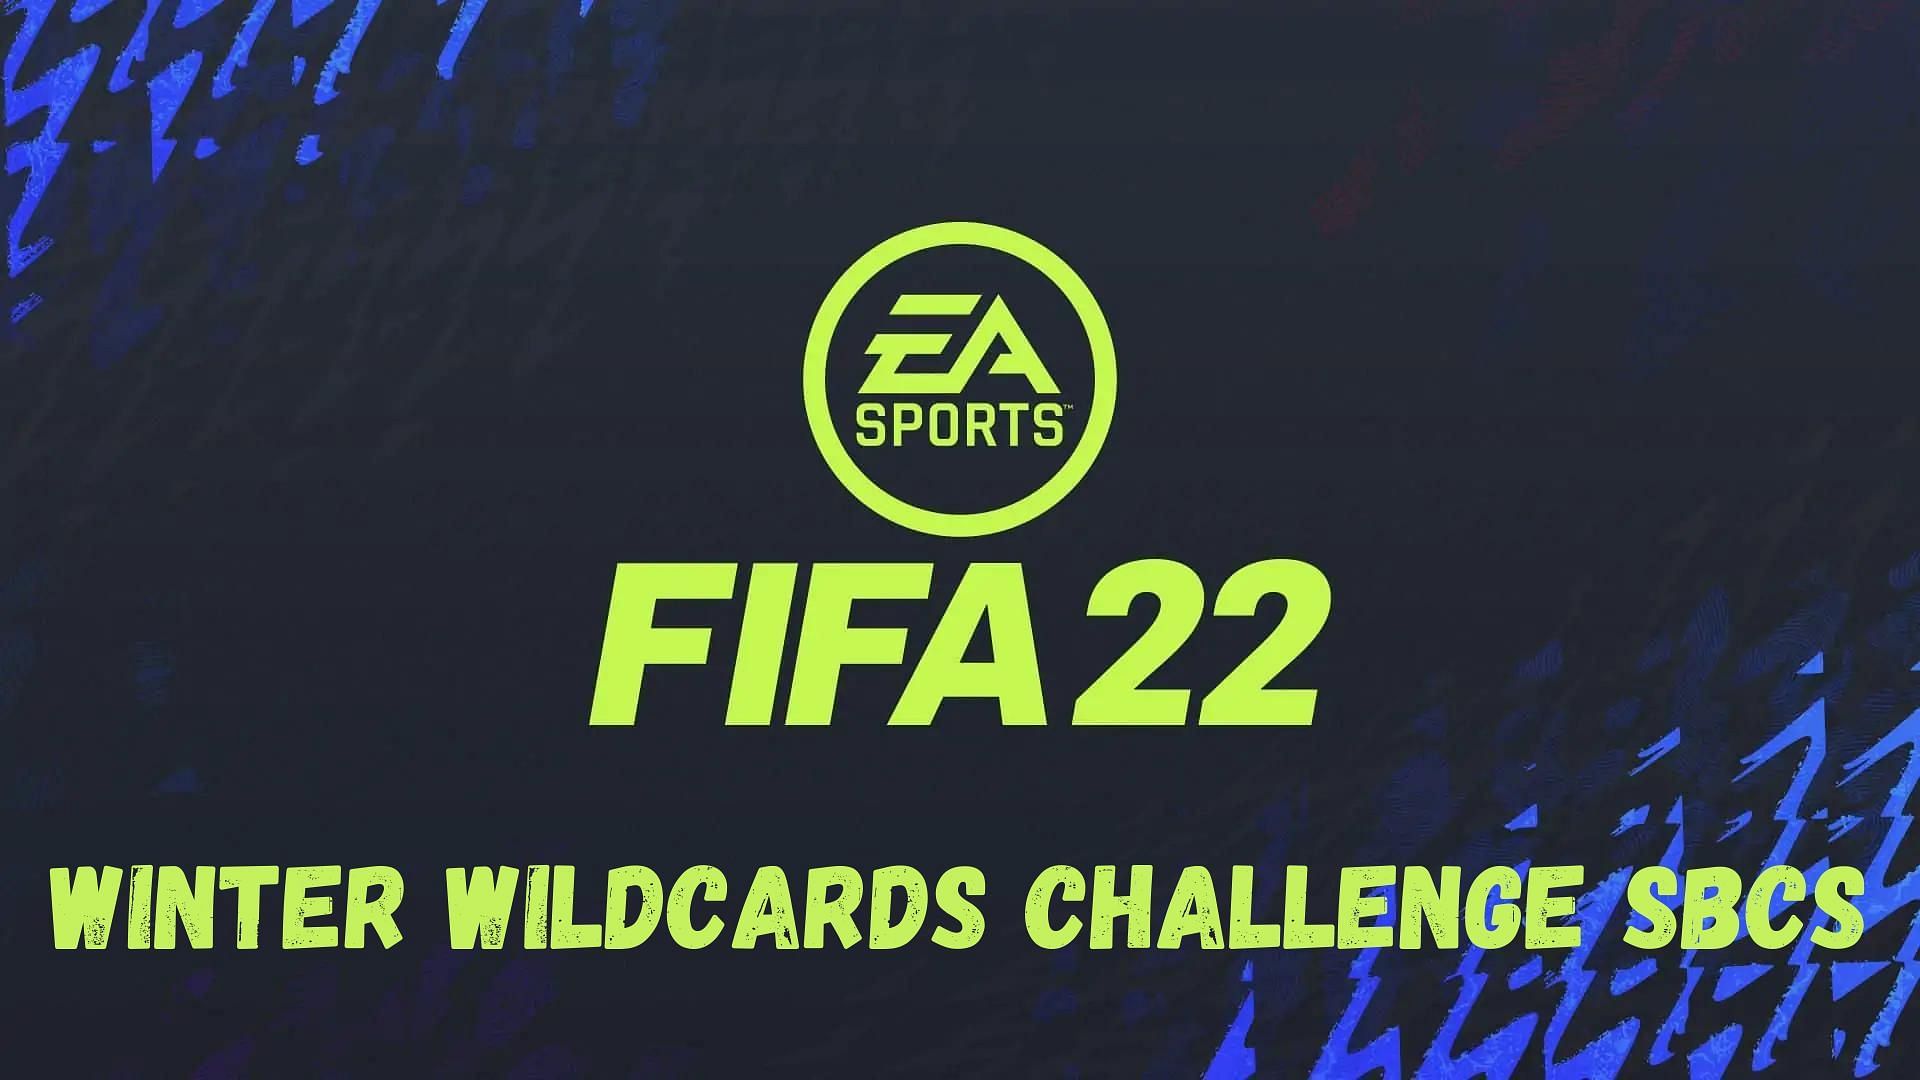 4 Winter Wildcards Challenge SBCs have been released in FIFA 22 so far (Image via Sportskeeda)